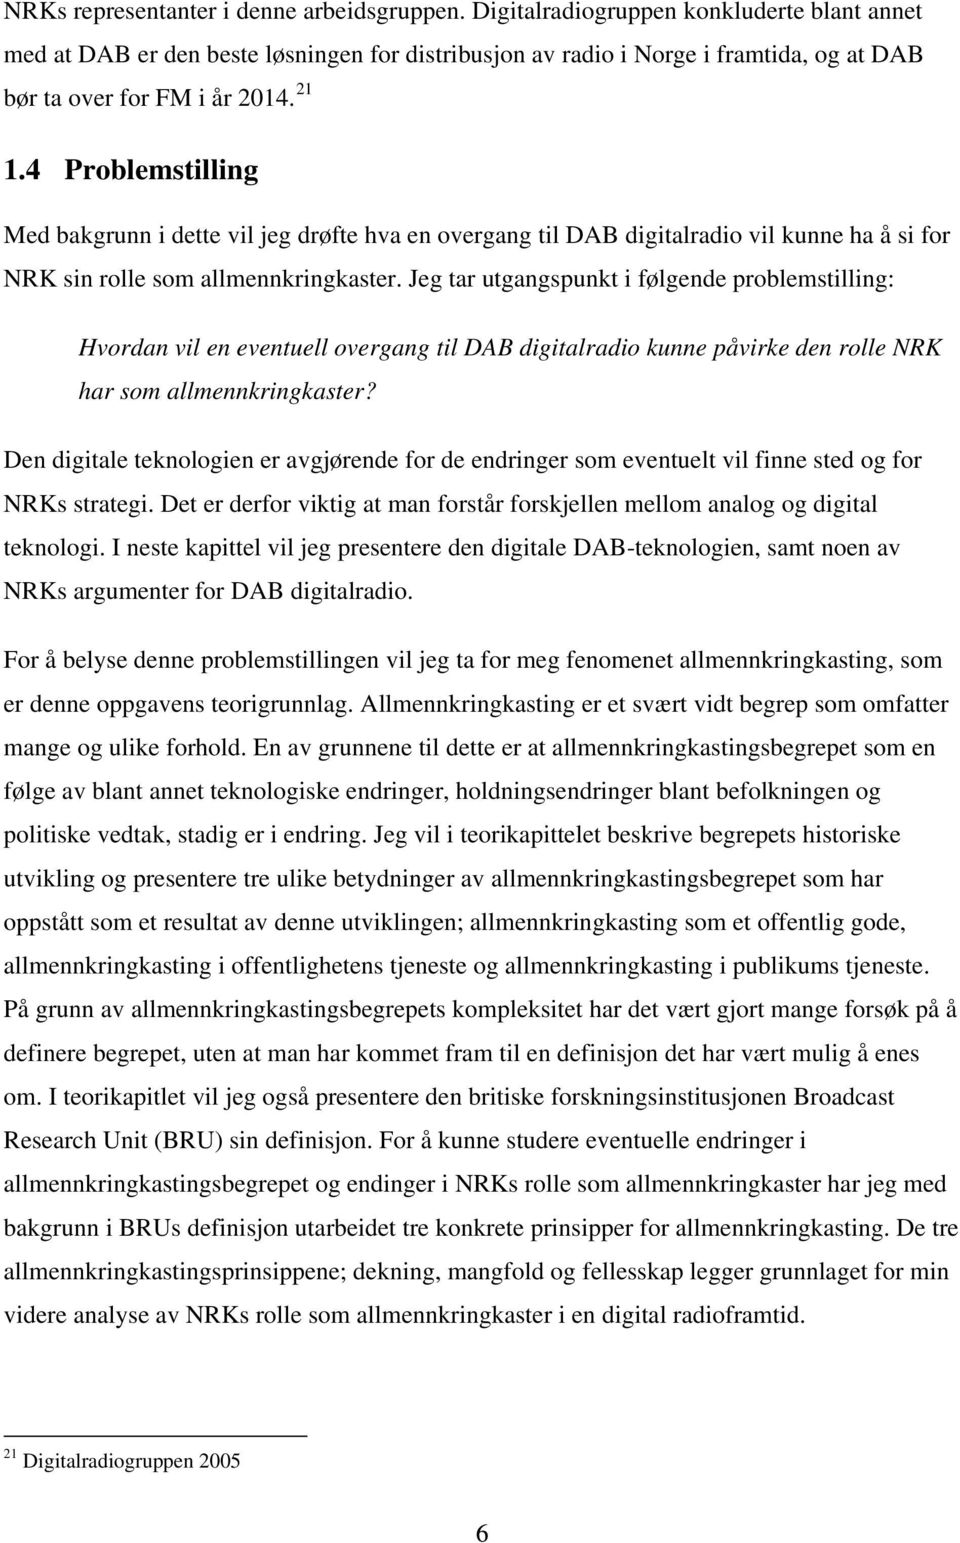 4 Problemstilling Med bakgrunn i dette vil jeg drøfte hva en overgang til DAB digitalradio vil kunne ha å si for NRK sin rolle som allmennkringkaster.